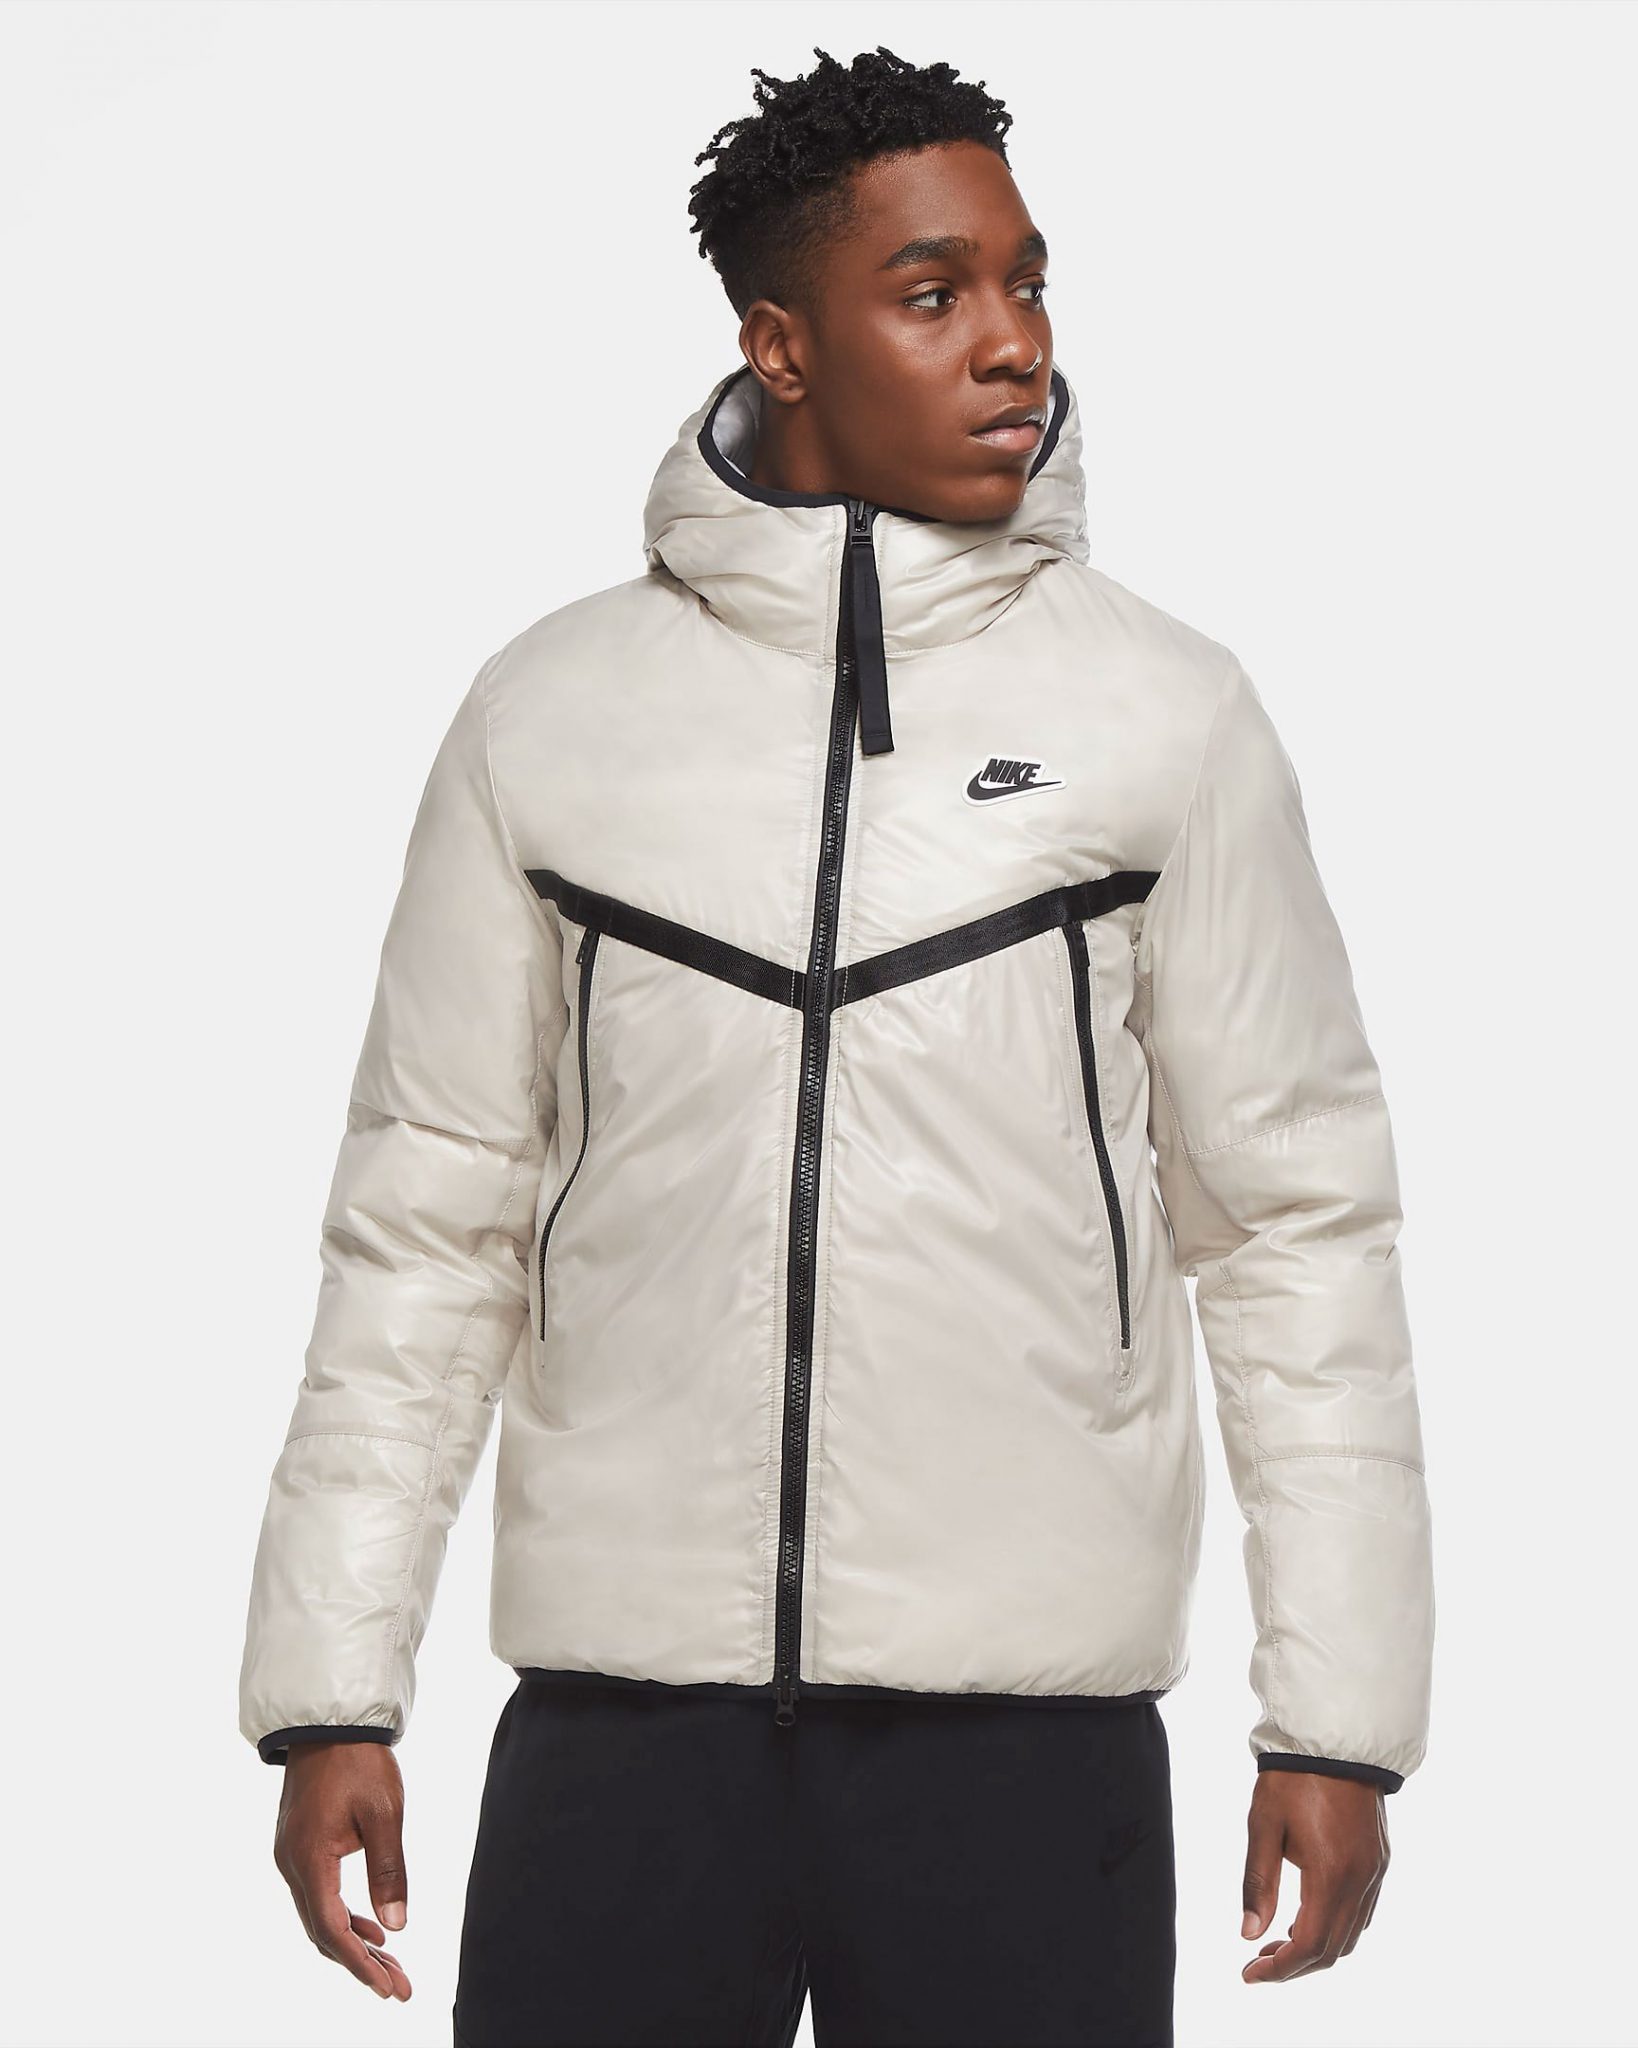 Nike Sportswear Windrunner Repel Jackets for Fall 2020 | SneakerFits.com